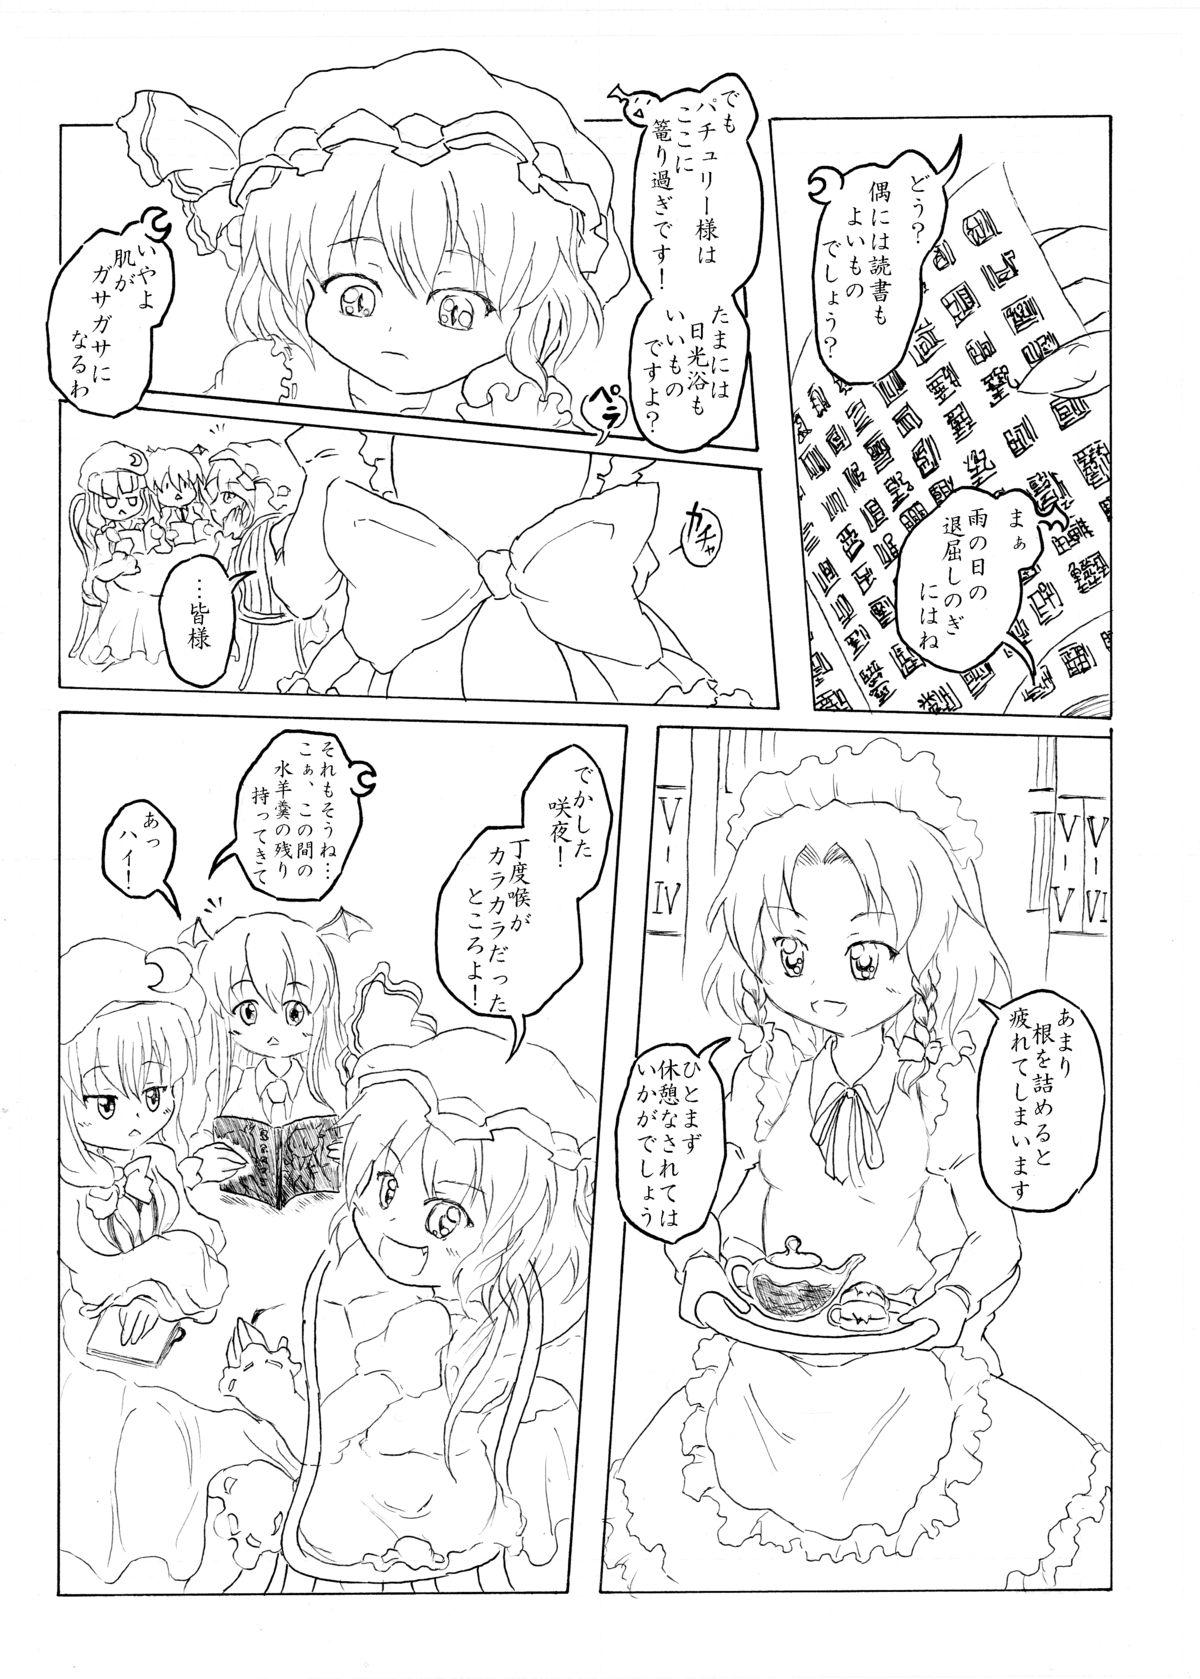 Cocksucking Sakuya no toki kan - Sakuya's Time F*ck - Touhou project Culonas - Page 4